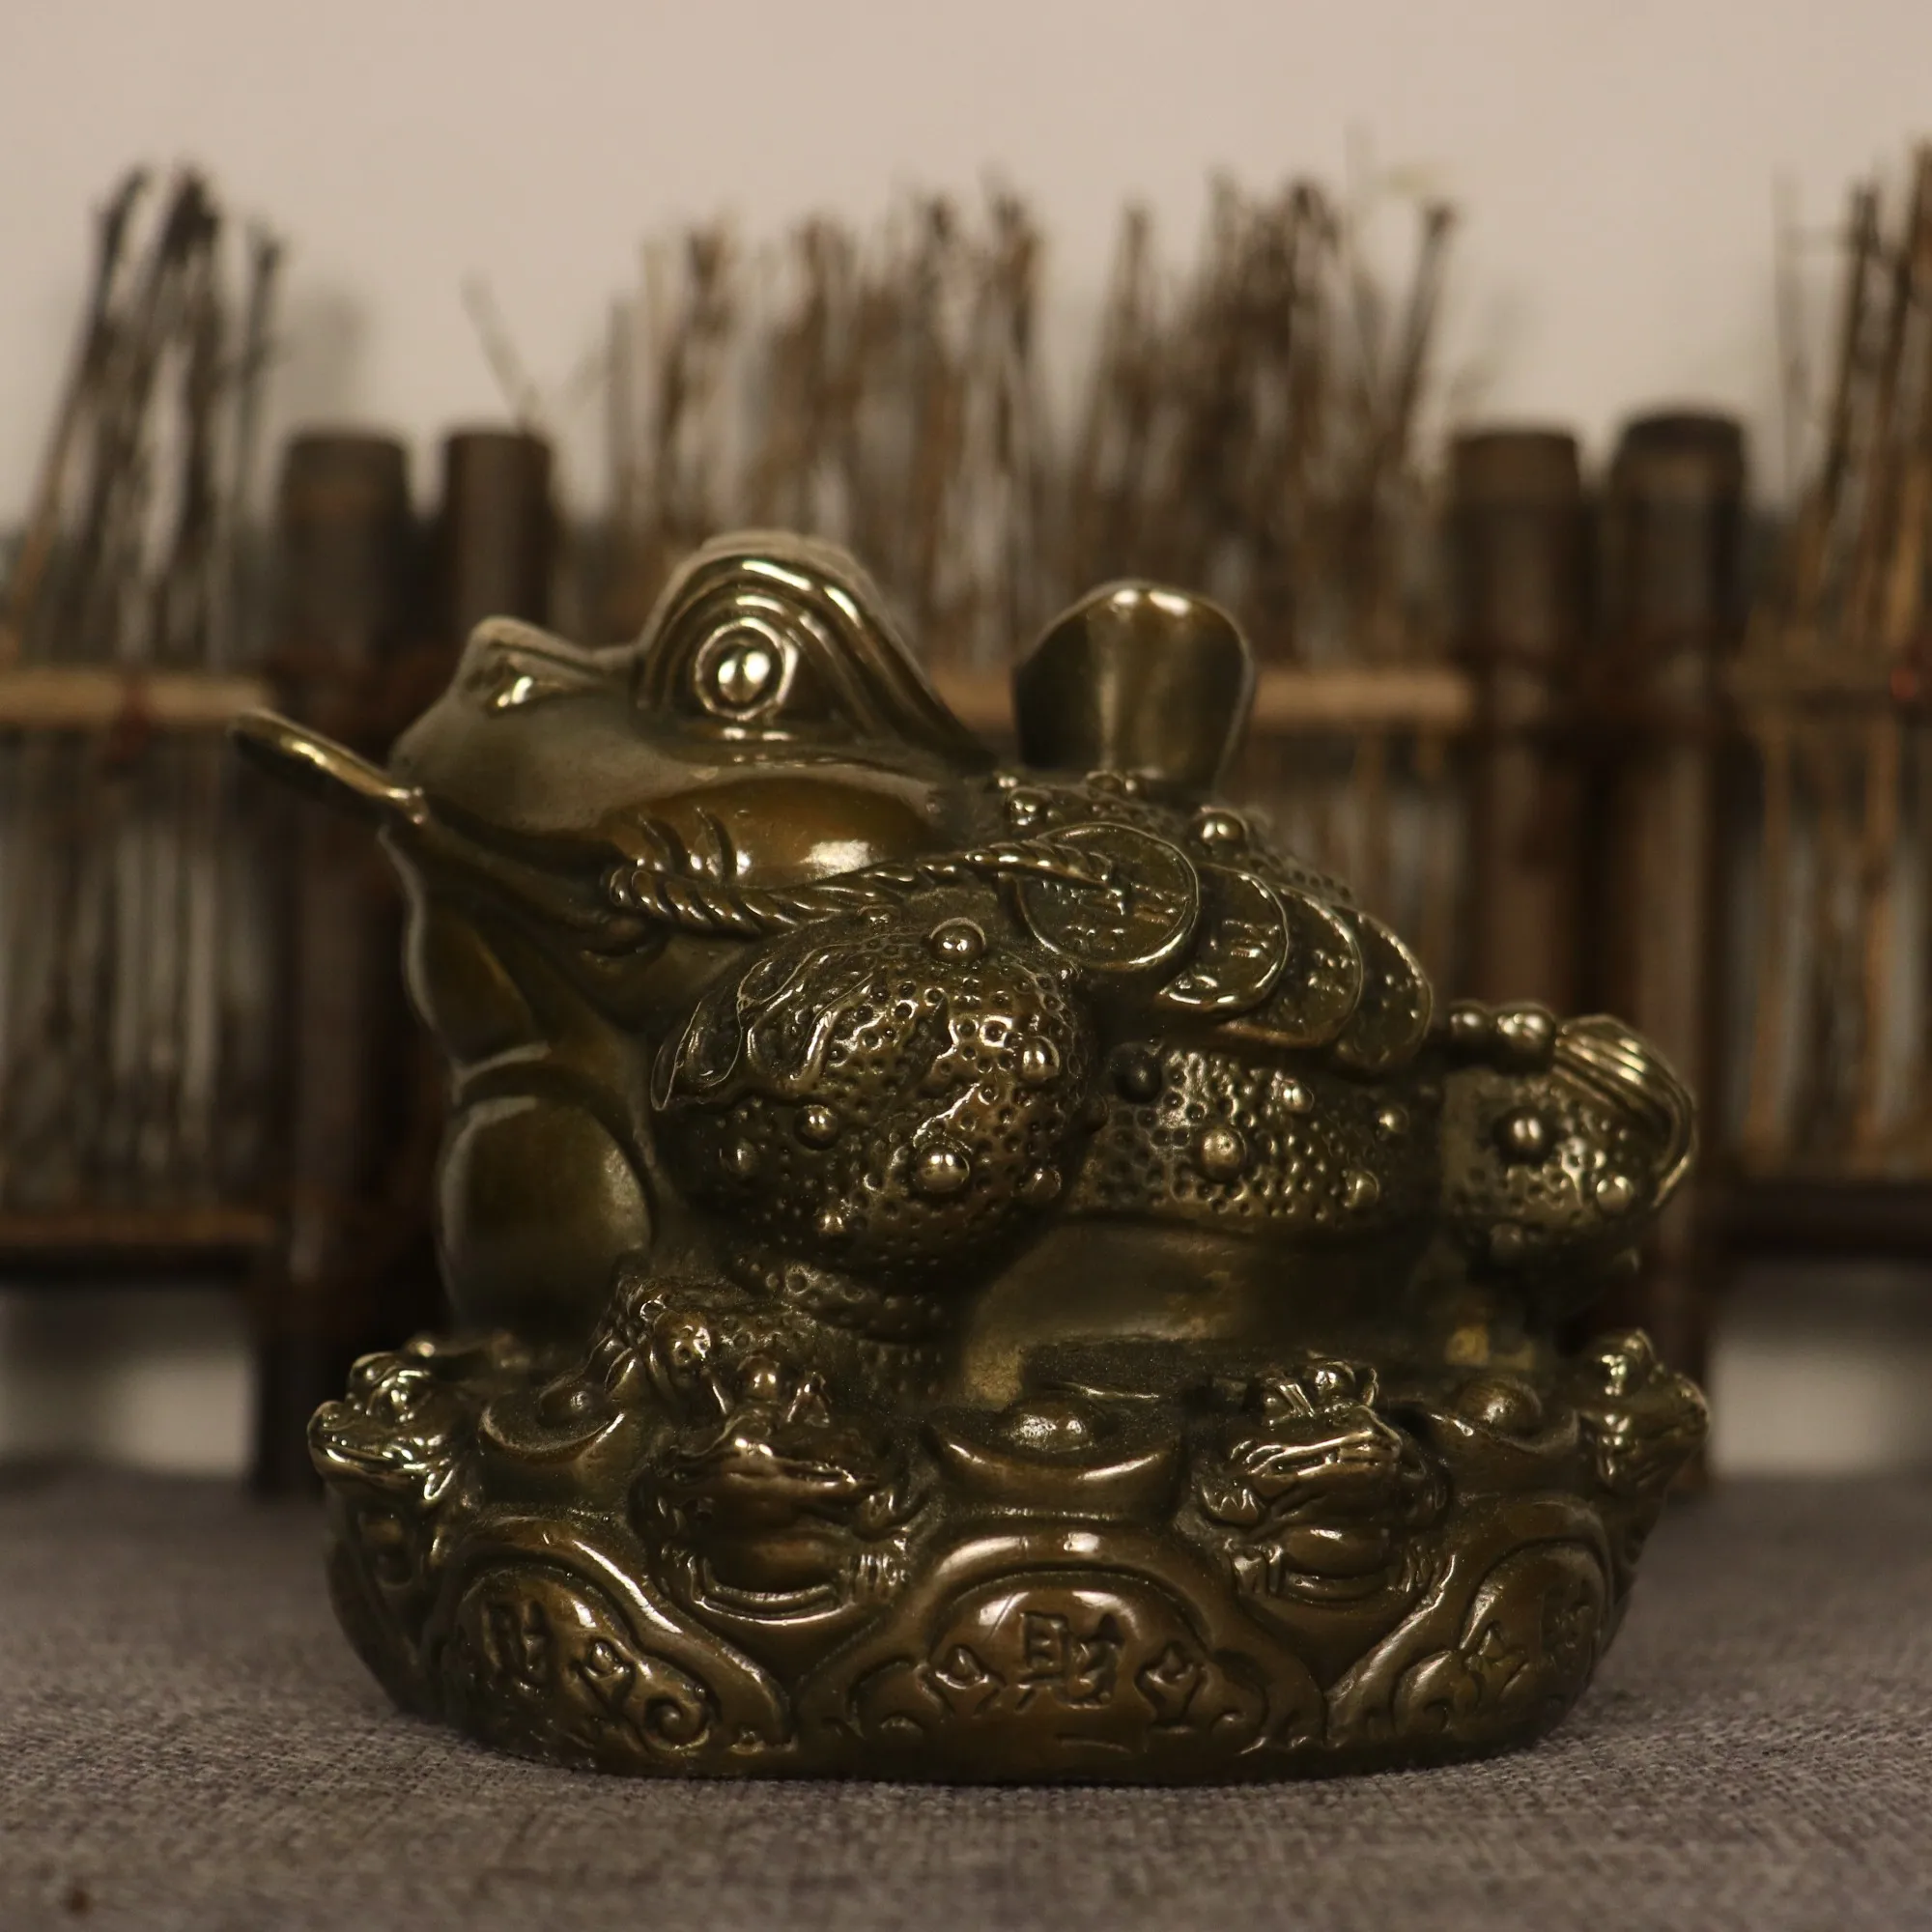 

Коллекция тибетских храмов 5 дюймов, старая латунная жаба, рвота, монеты юанбао, Золотая Жаба, амас, украшения для богатства, городской дом, Экзорцизм